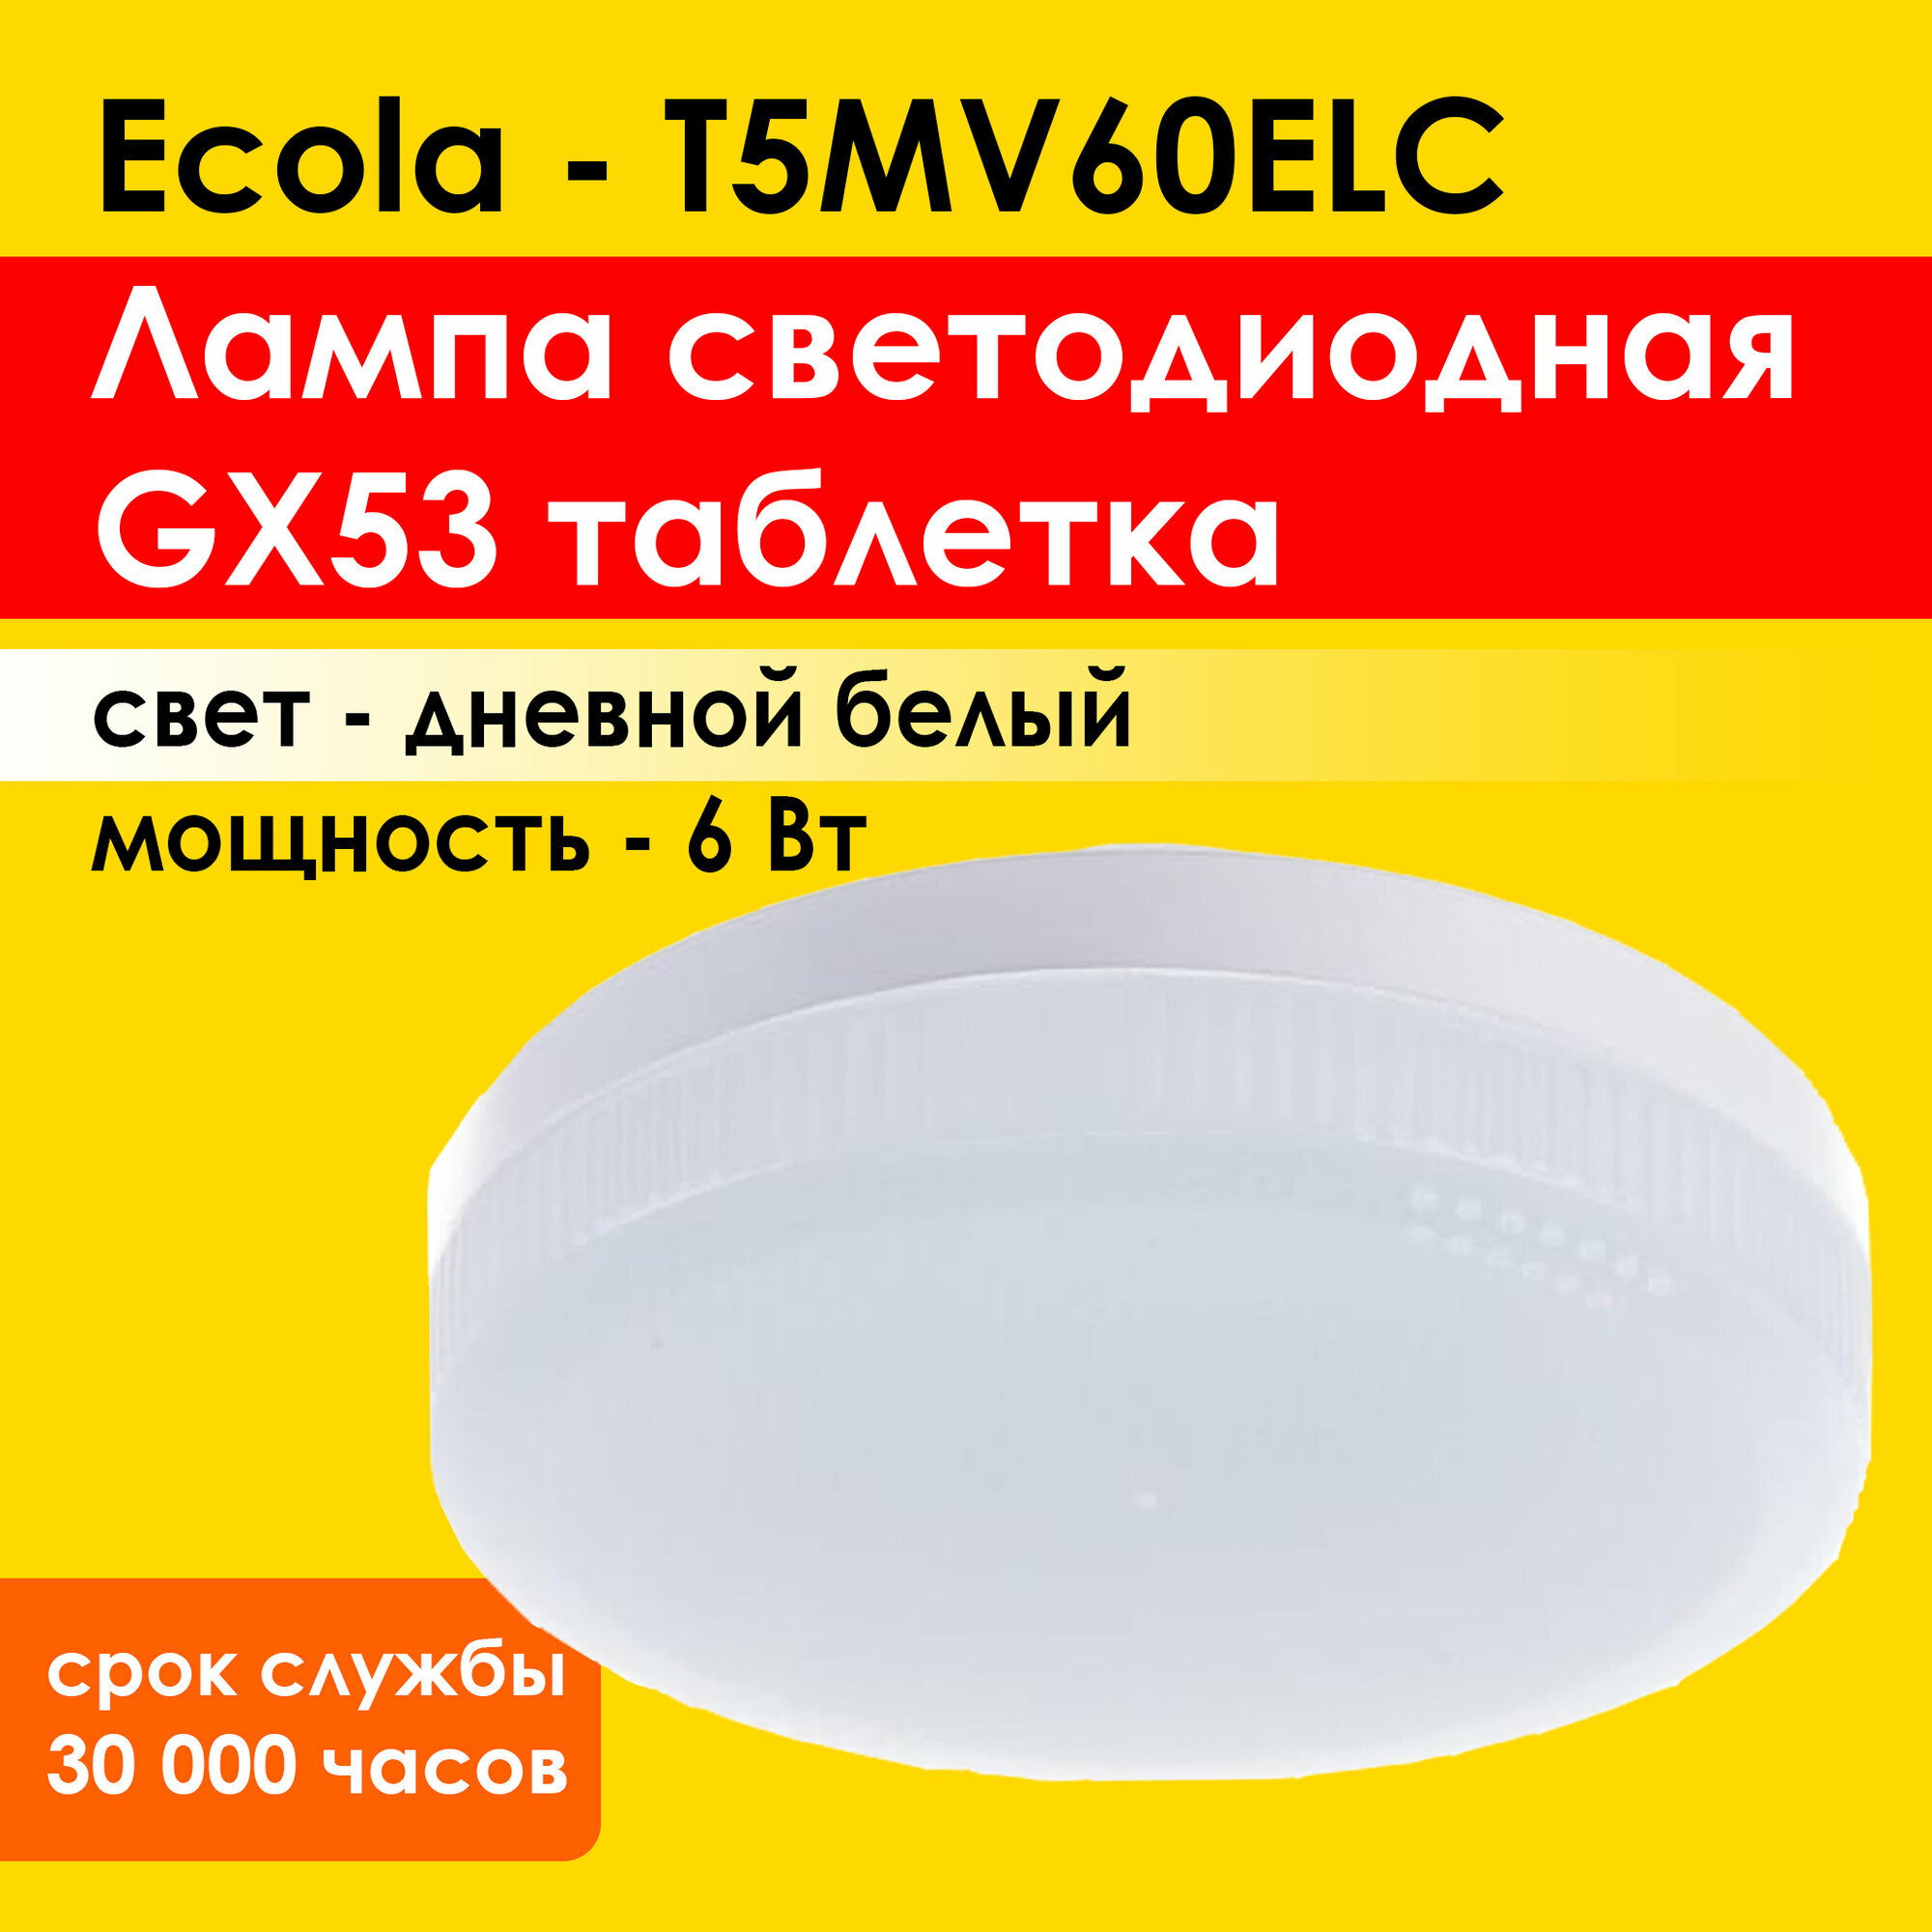 Лампа светодиодная, для натяжных потолков Ecola Light GX53 LED 6,0W, нейтральный дневной белый свет 4200K (T5MV60ELC)